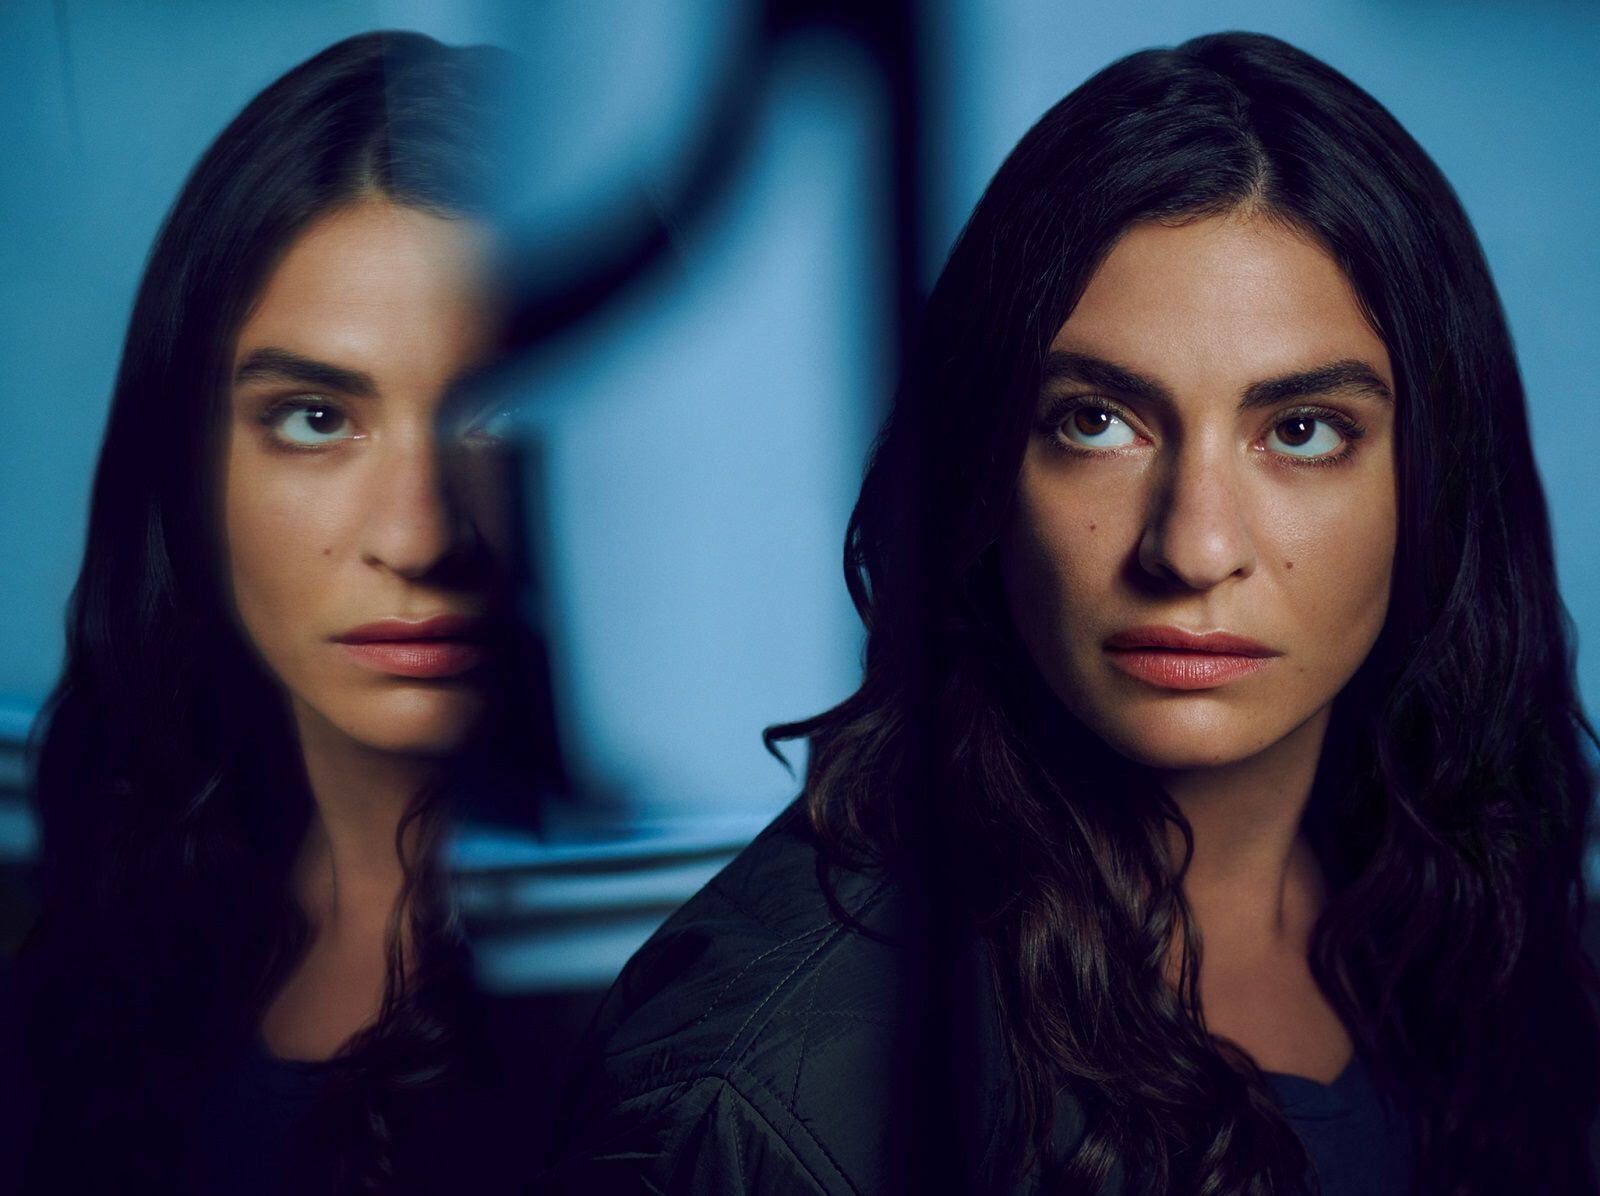 Yumna Marwan asume el rol de Adilah El Idrissi, quien forma parte de una organización peligrosa, en la serie de suspenso "The Veil" (Foto: FX)